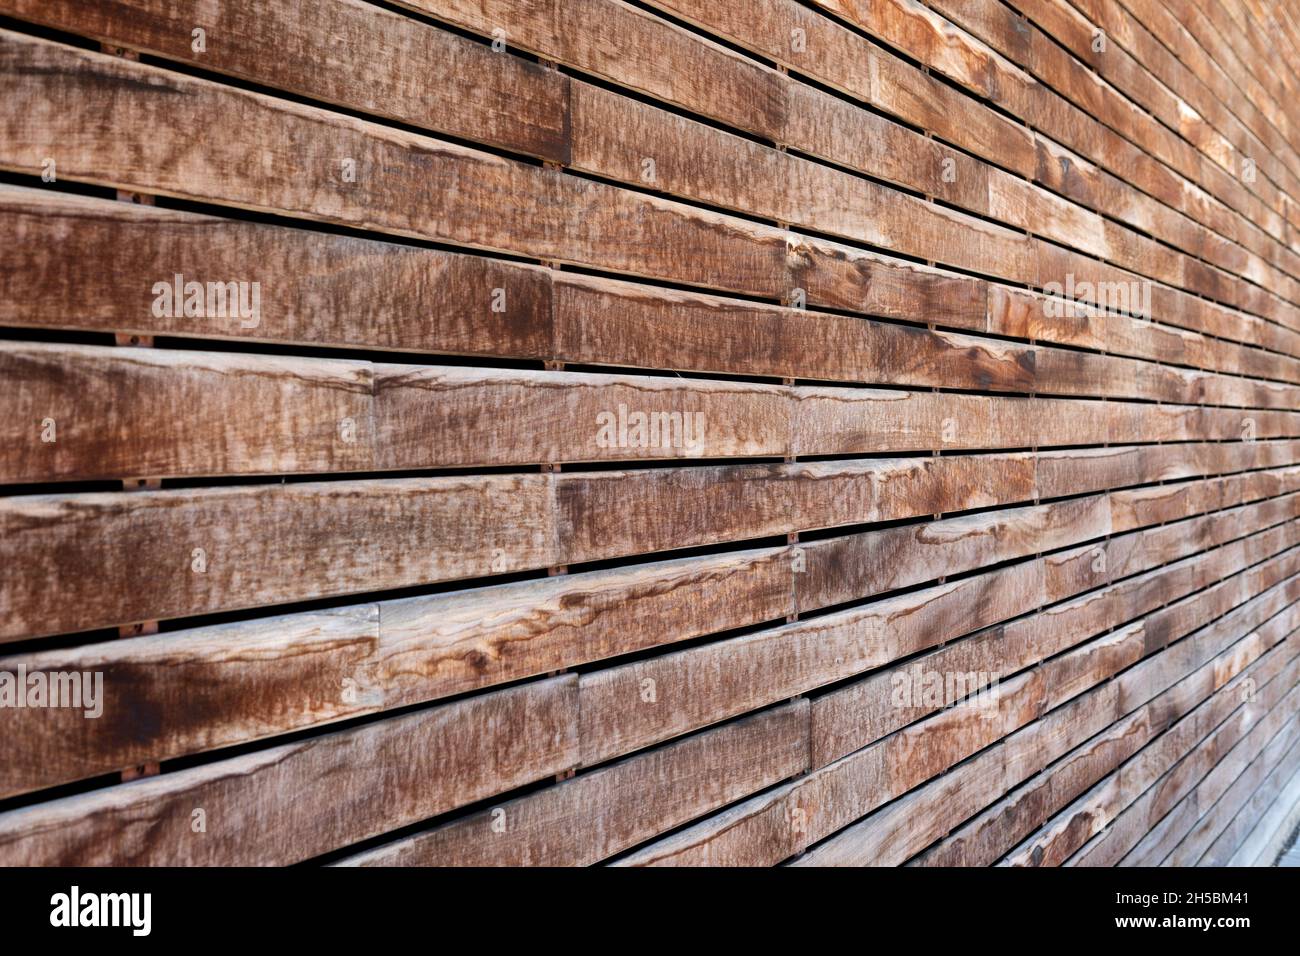 Hình ảnh tường gỗ: Hình ảnh tường gỗ sẽ khiến bạn phải ngỡ ngàng với sự độc đáo và mới lạ của nó. Tường gỗ mang đến một không gian ấm cúng, gần gũi và tốt cho sức khỏe. Hãy xem hình ảnh để cảm nhận được sự khác biệt và độc đáo của tường gỗ.